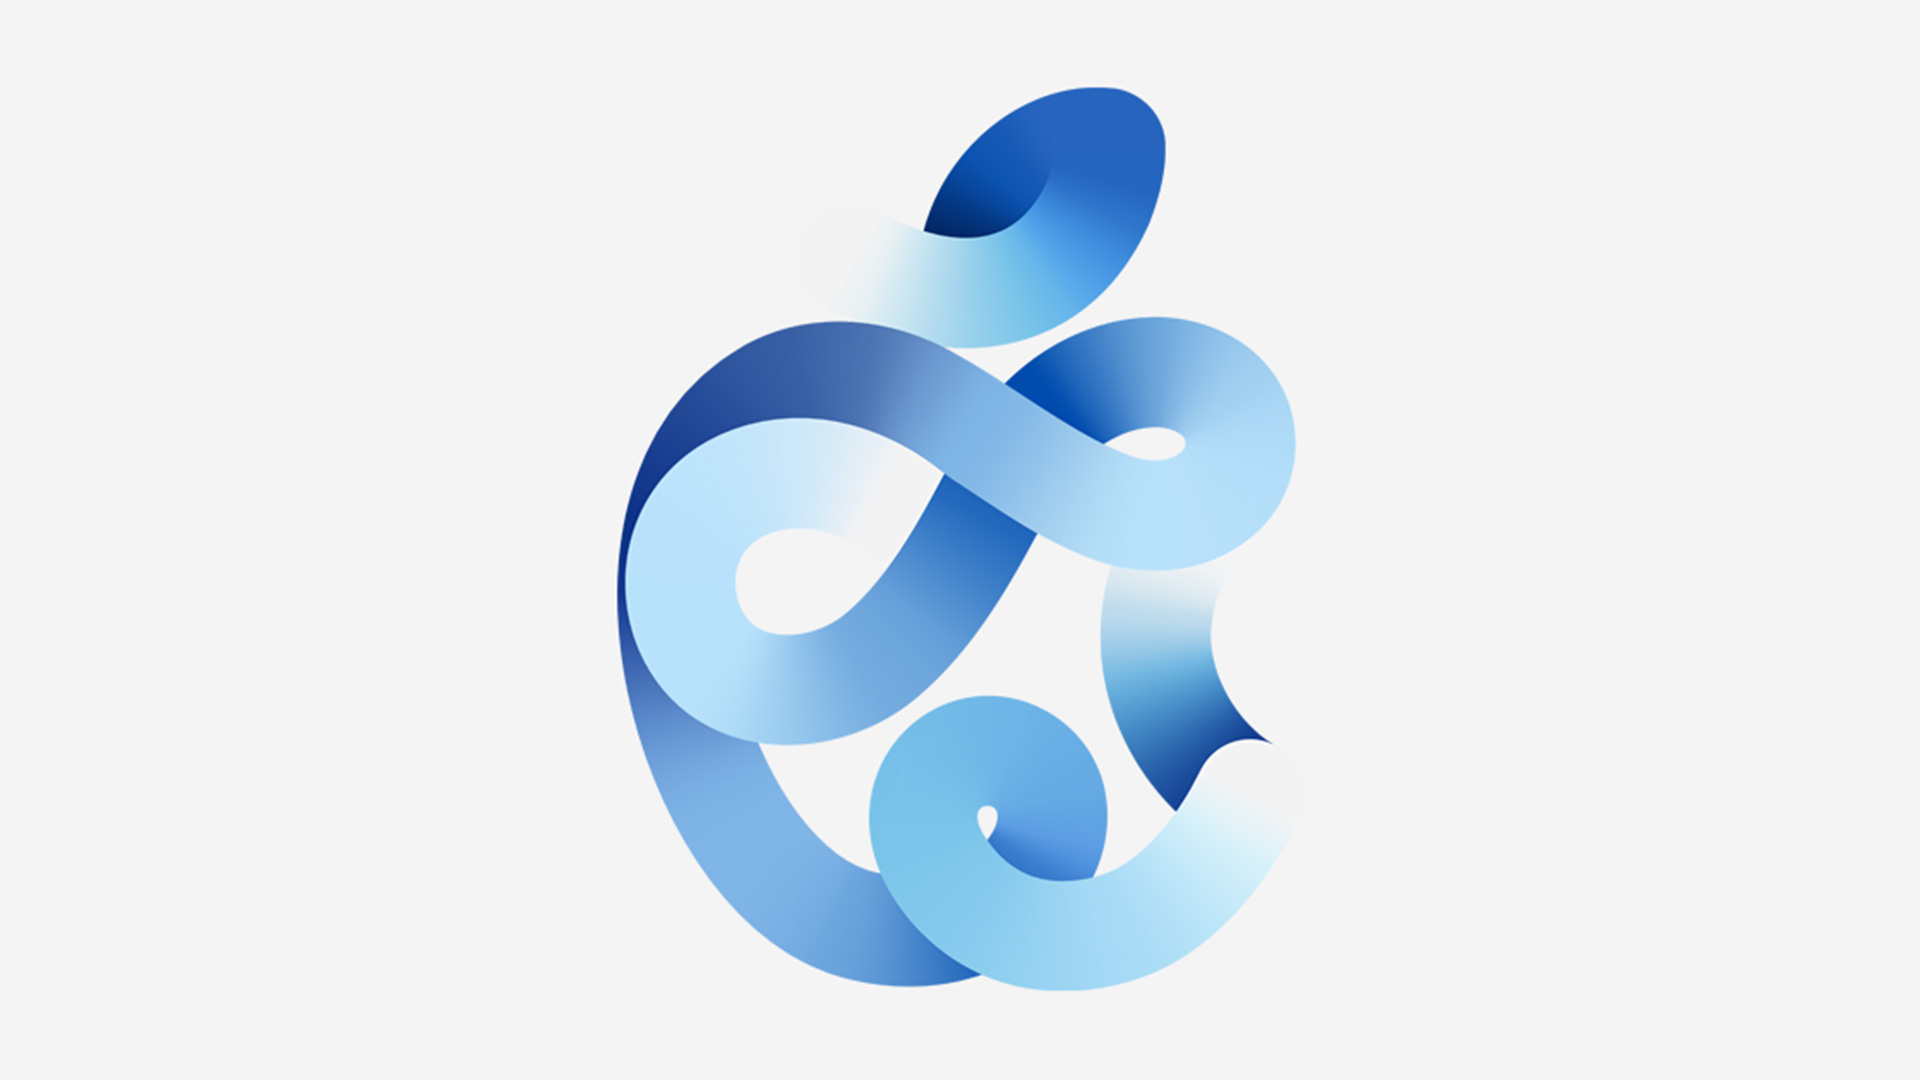 apple september 2020 event logo